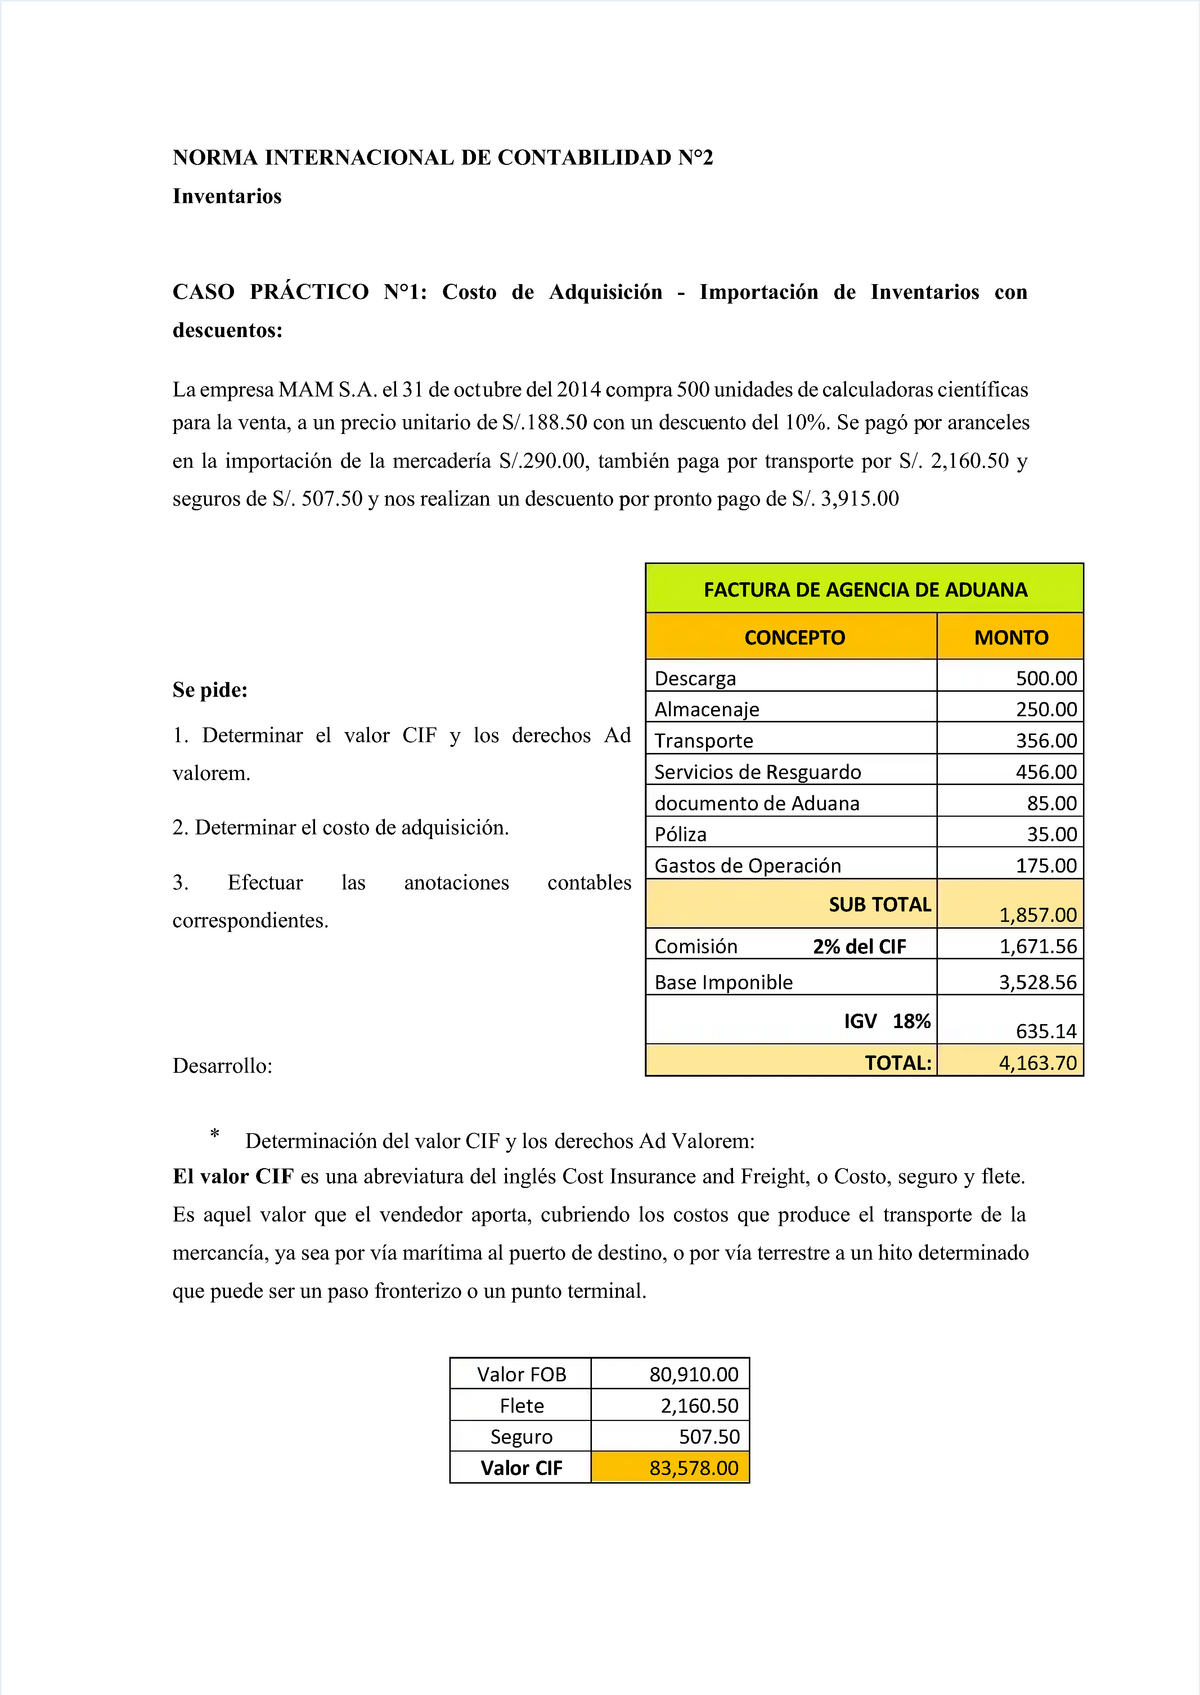 Pdf Nic 2 Compress Casos Practicos De La Nic 2 Norma Internacional De Contabilidad N°2norma 4763